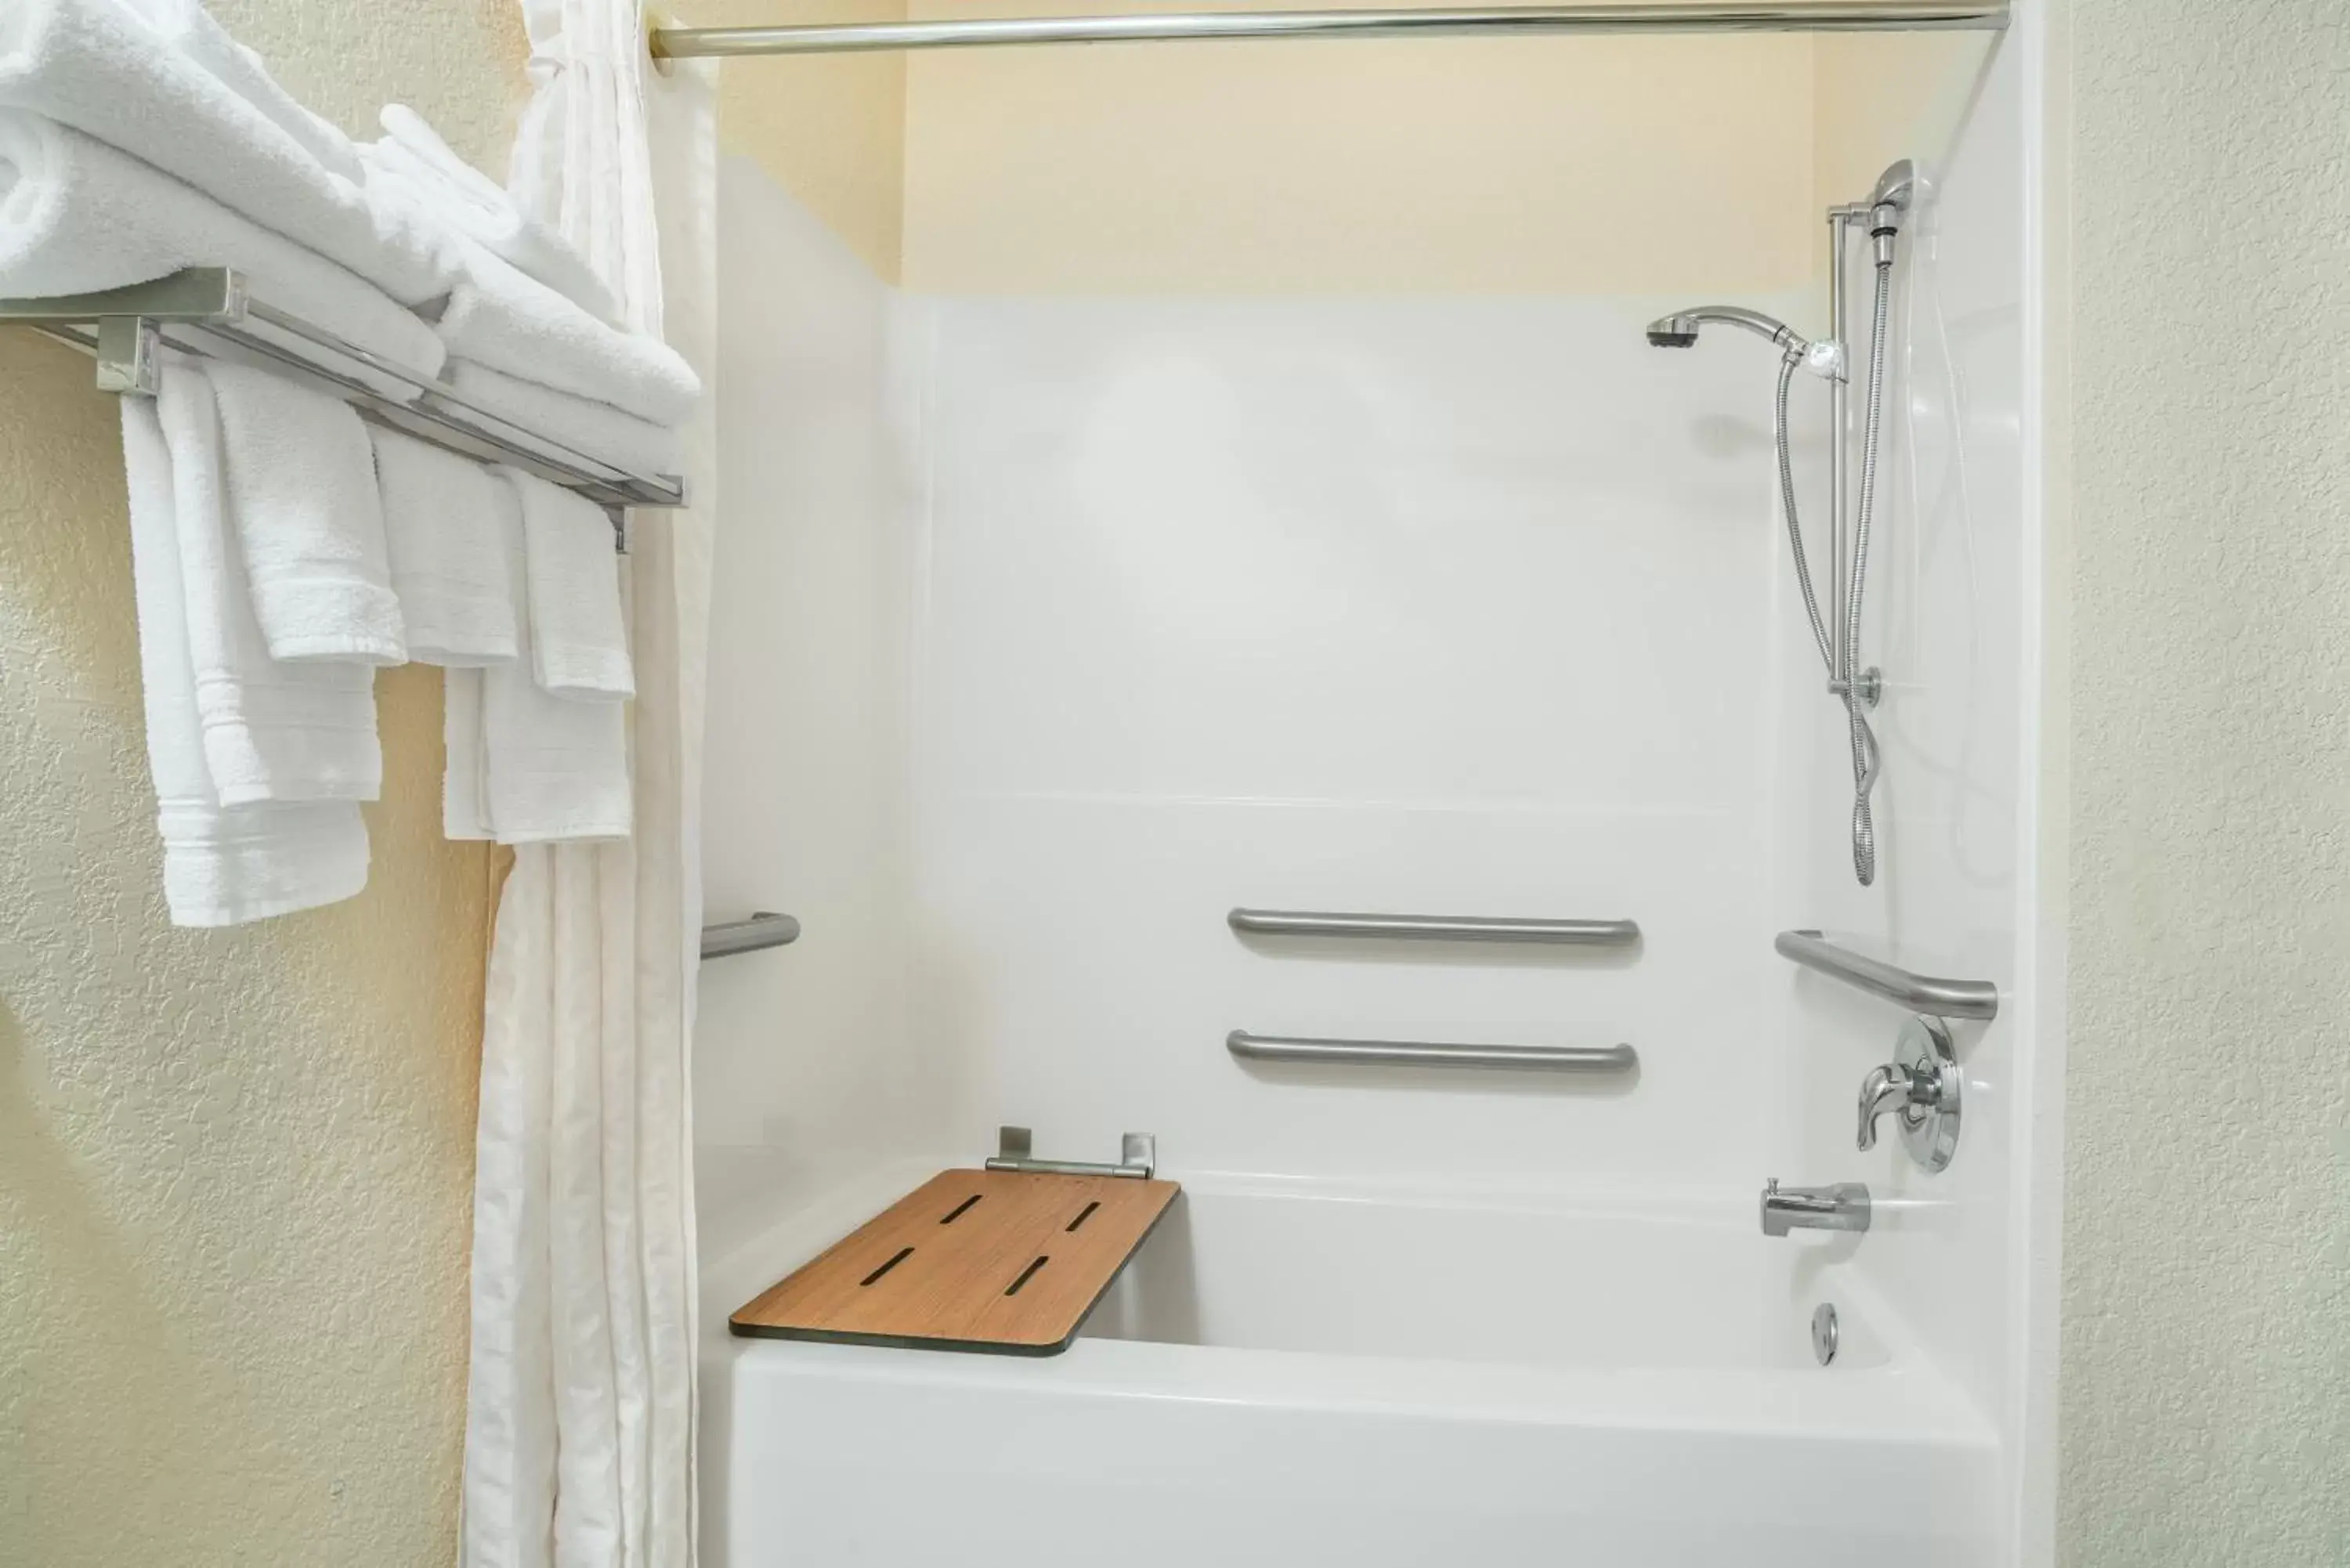 Shower, Bathroom in Microtel Inn & Suites Tomah